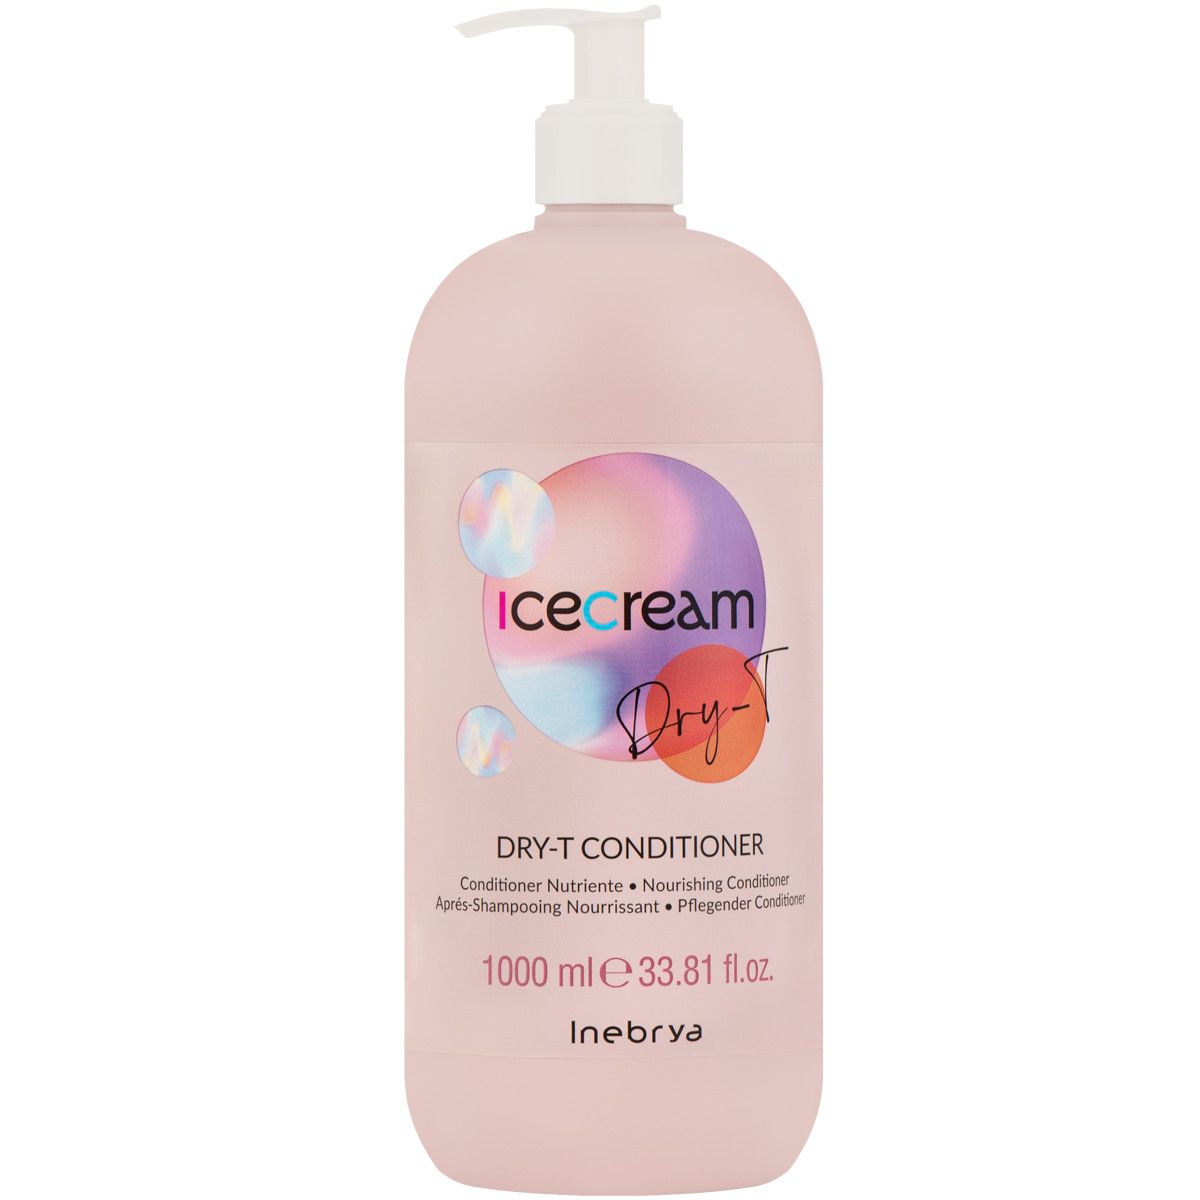 Inebrya Ice Cream Dry-T - odżywka do włosów suchych i puszących się, 1000ml